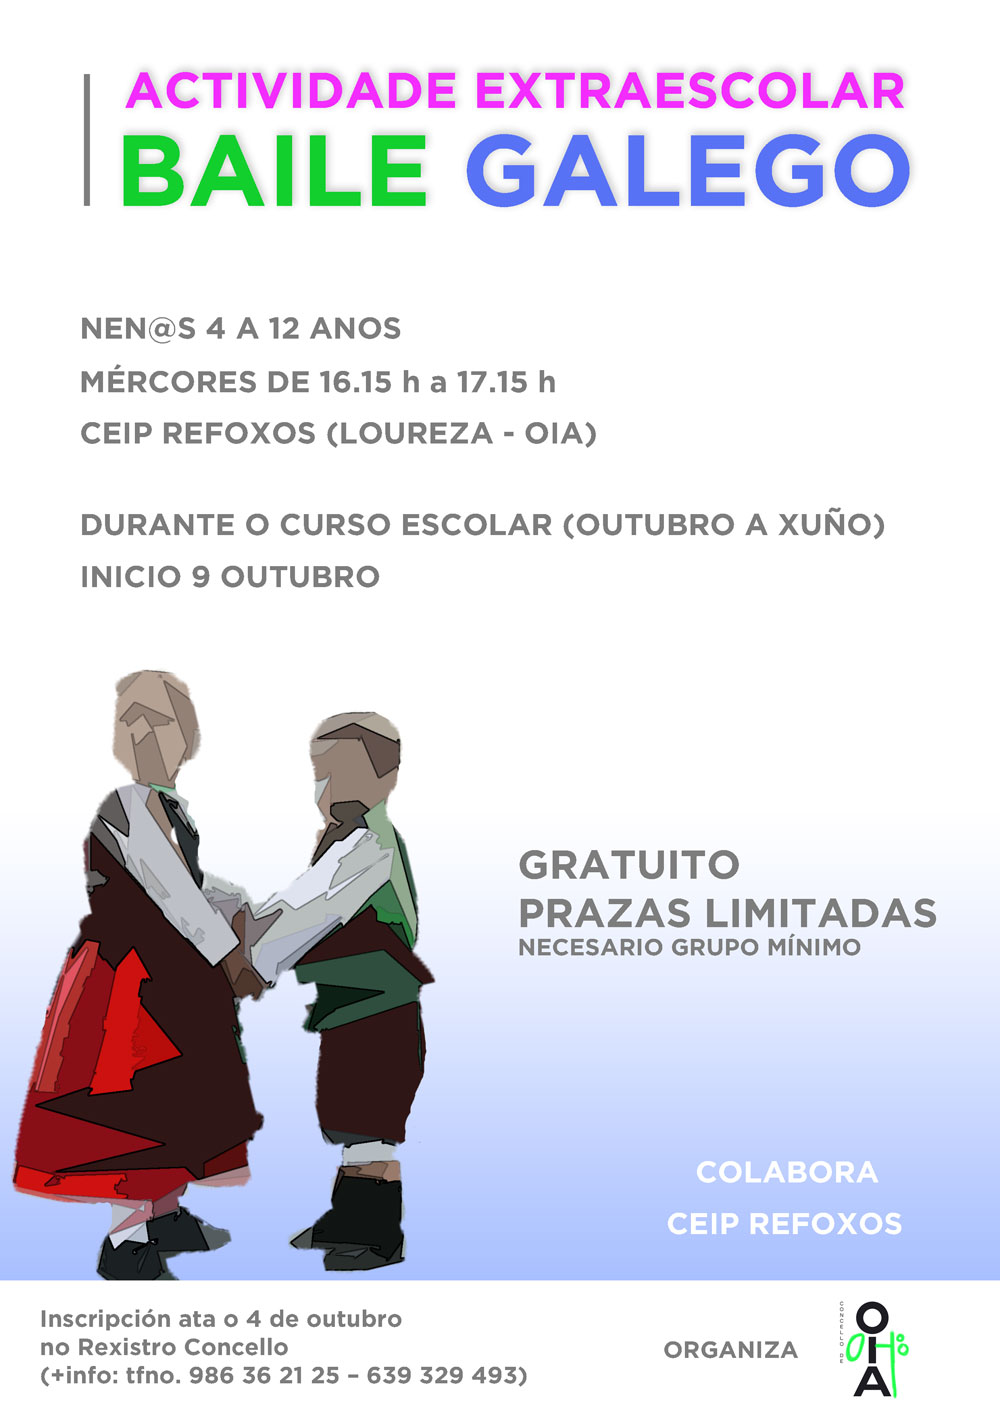 O Concello de Oia oferta un curso de baile galego como actividade extraescolar gratuíta